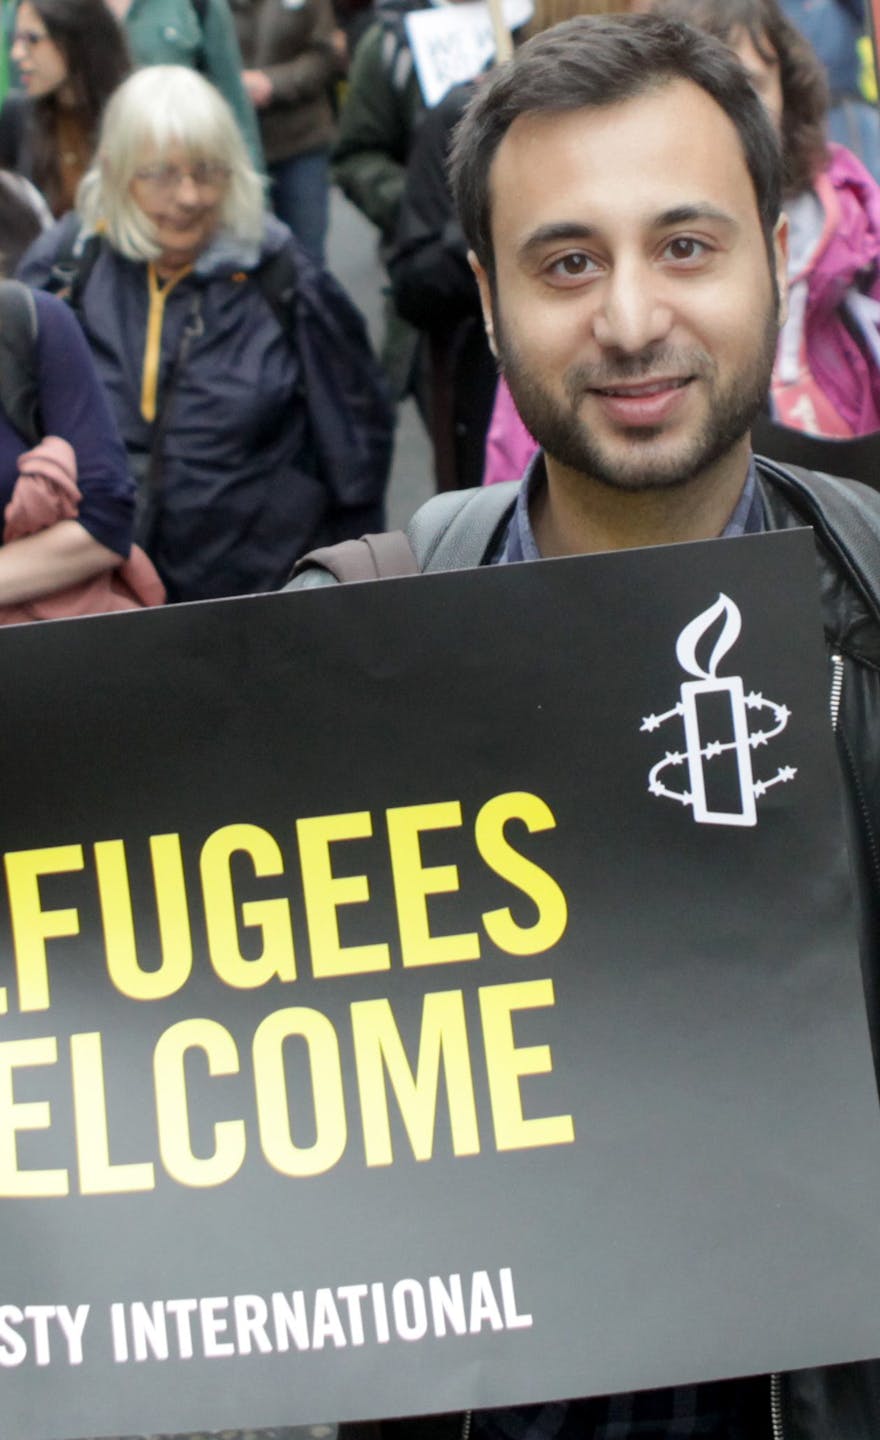 De Vluchtelingen Welkom-demonstratie in Londen op 17 september trok 30 duizend mensen. Het evenement was georganiseerd door Amnesty International en Solidarity with Refugees in samenwerking met meer dan 40 andere organisaties.